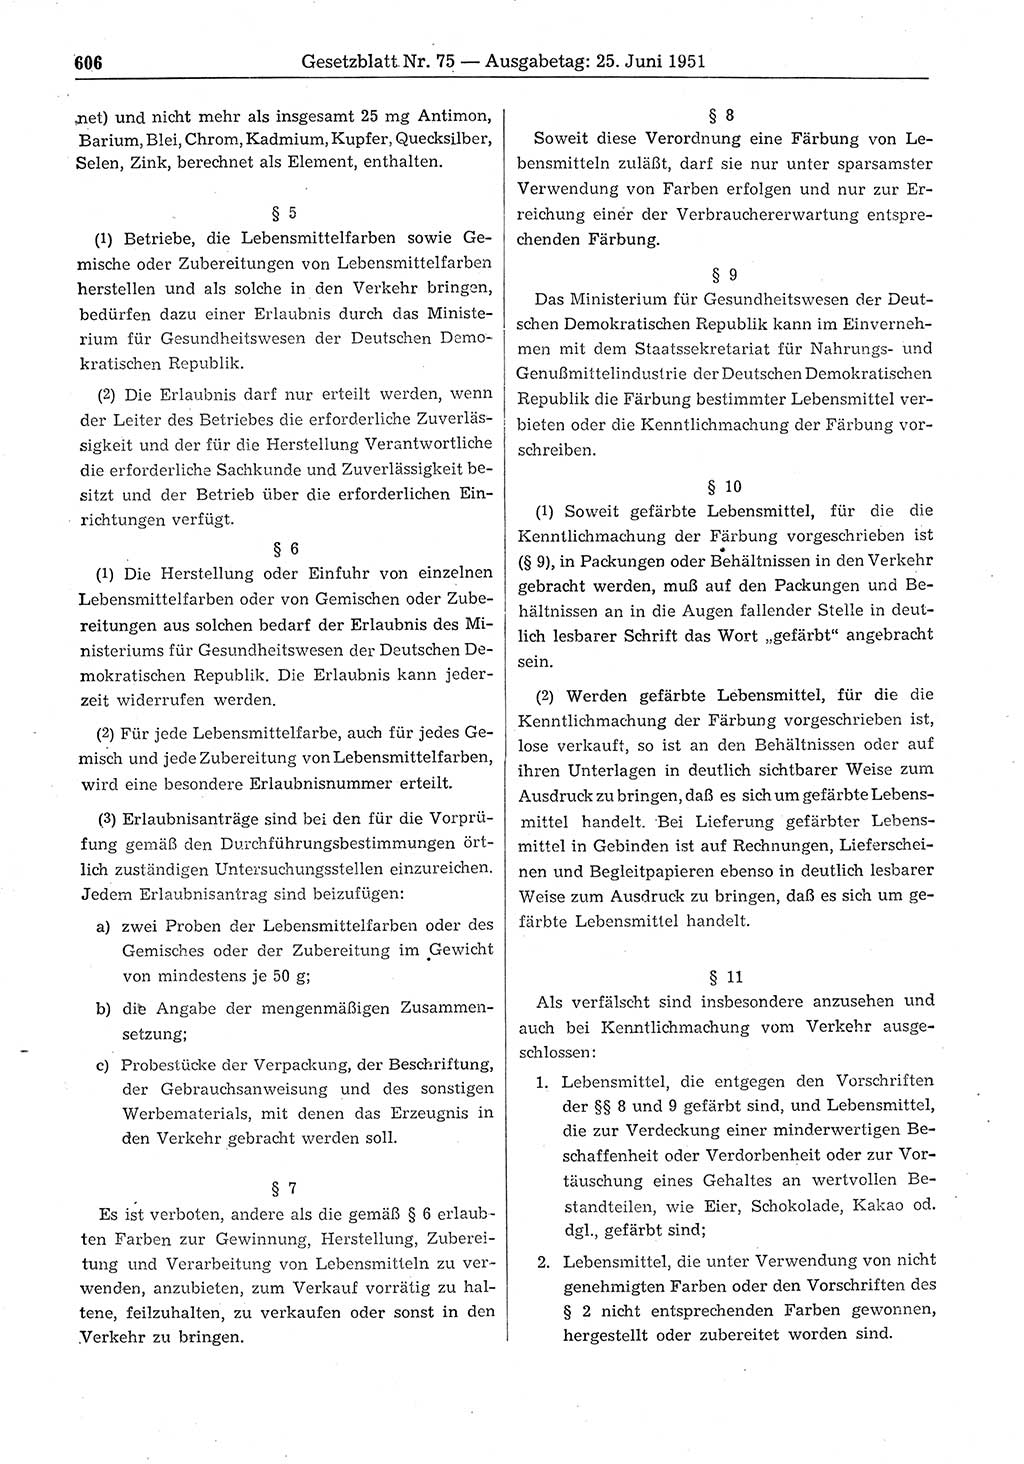 Gesetzblatt (GBl.) der Deutschen Demokratischen Republik (DDR) 1951, Seite 606 (GBl. DDR 1951, S. 606)